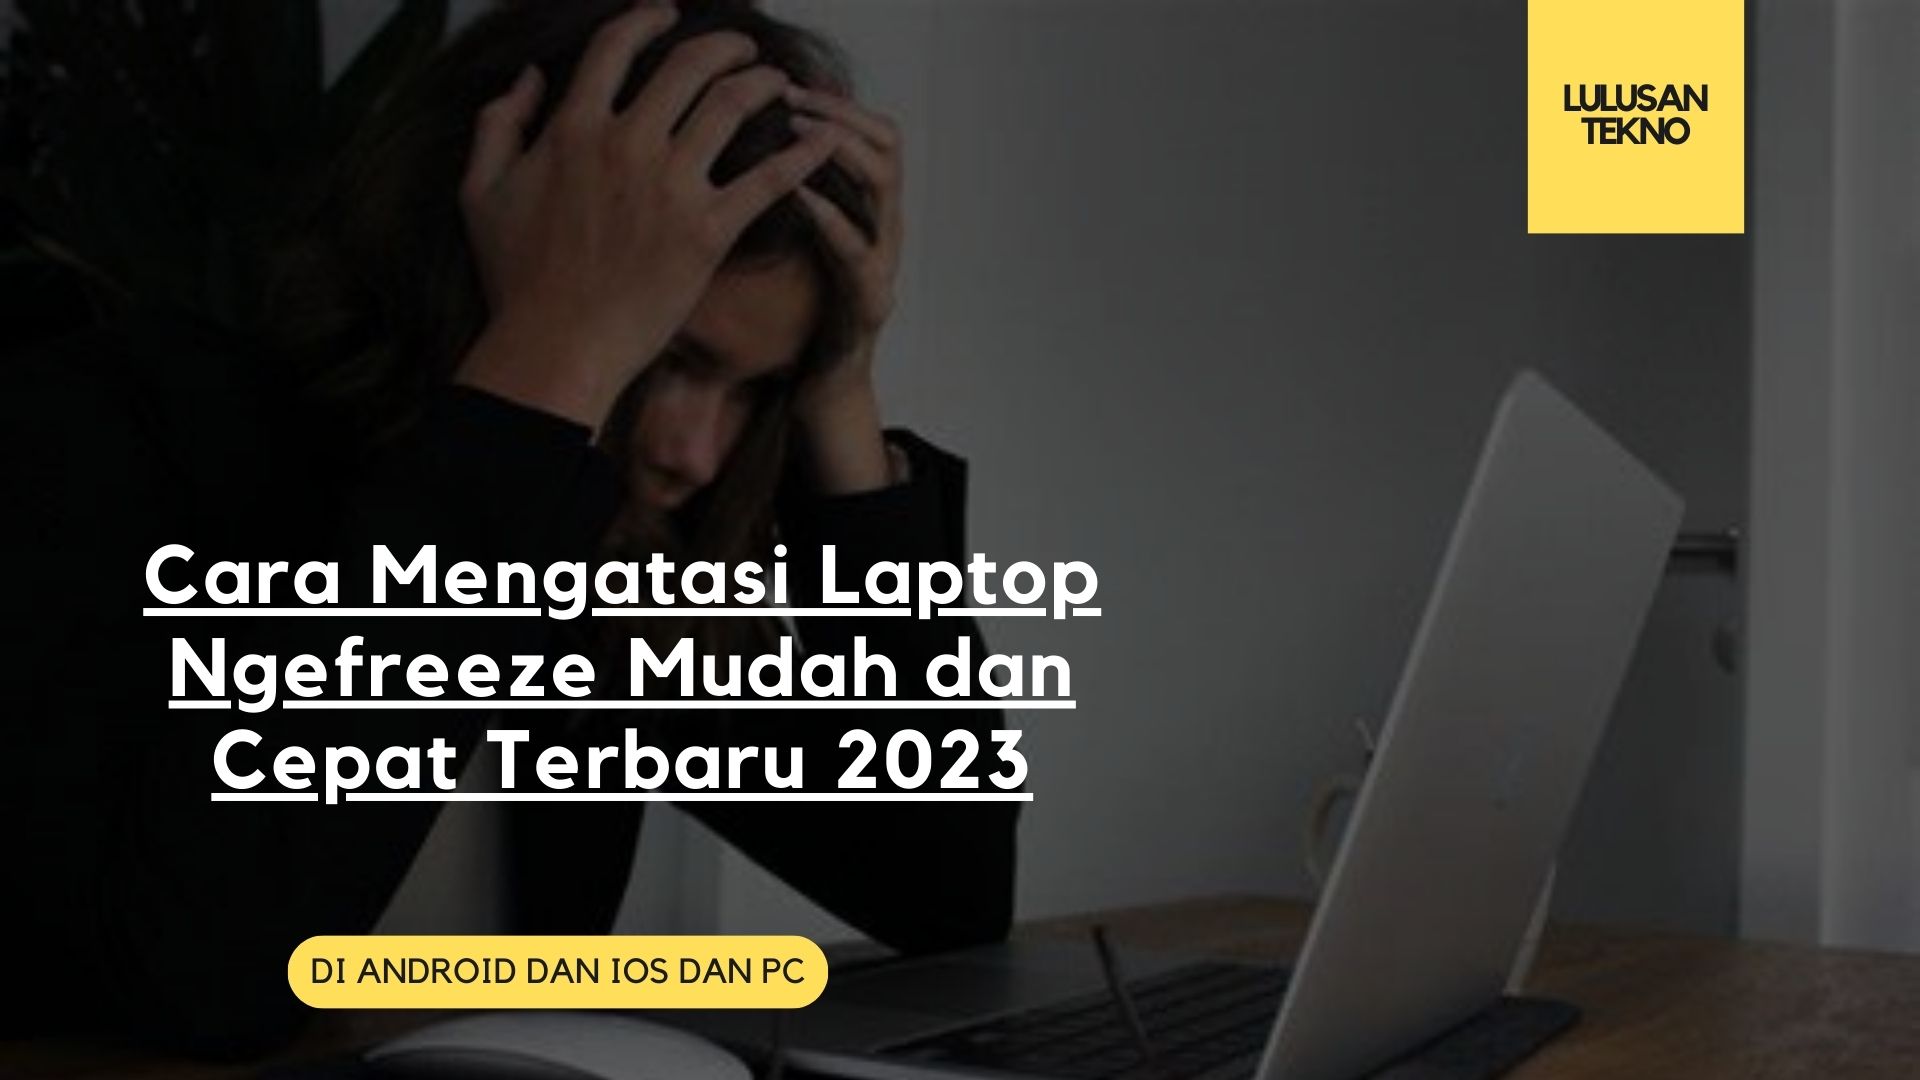 Cara Mengatasi Laptop Ngefreeze Mudah dan Cepat Terbaru 2023